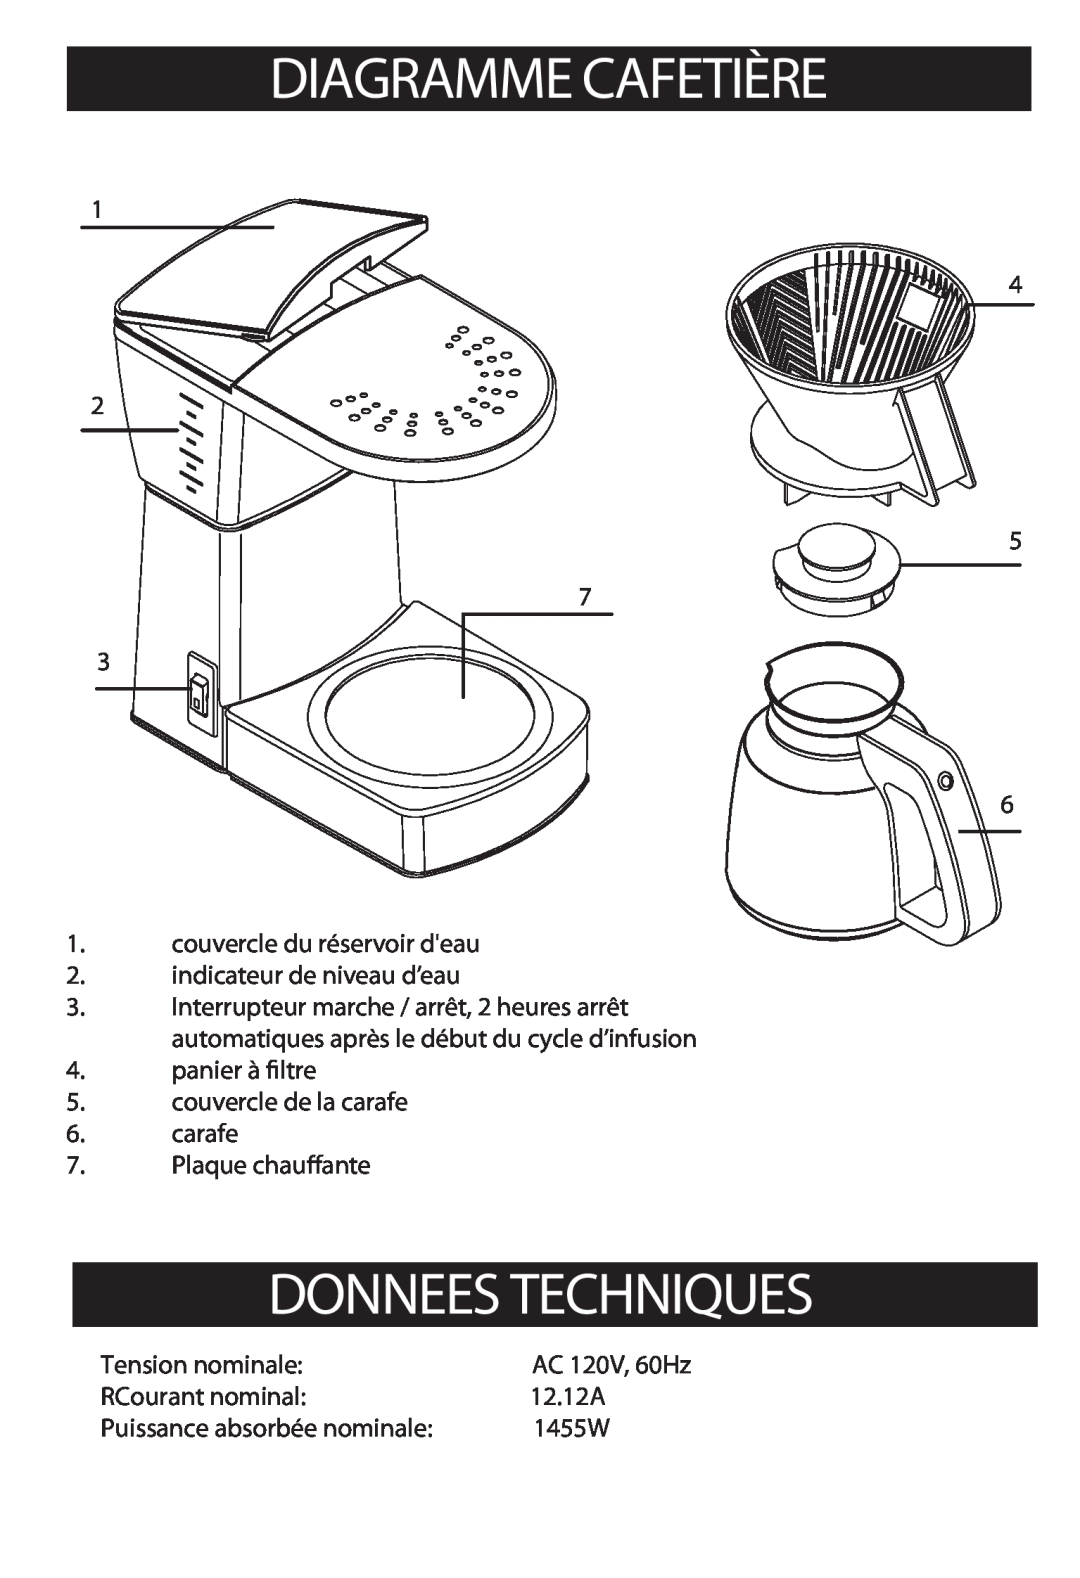 Bonavita BV1800 Diagramme Cafetière, Donnees Techniques, 1 4 2 5 7 3 6 1.couvercle du réservoir deau, Plaque chauante 